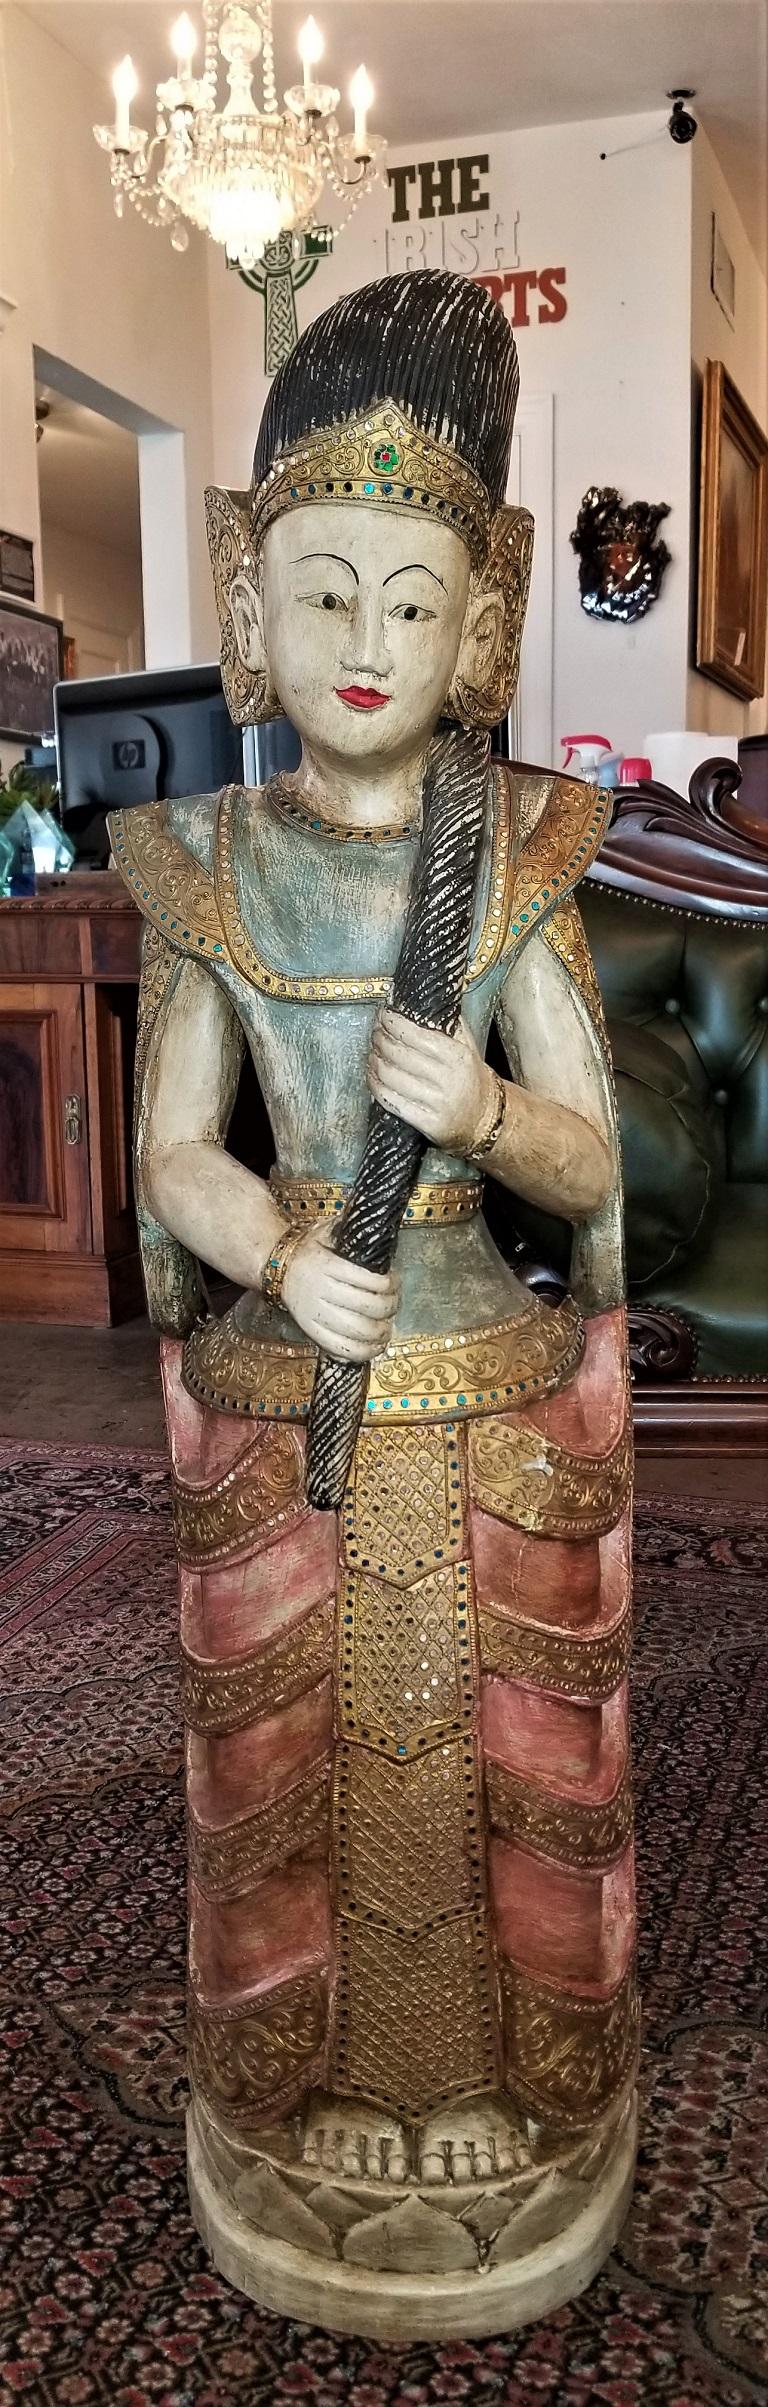 Wir präsentieren eine wunderschöne polychrome Statue einer thailändischen Göttin aus dem frühen 20.
Hergestellt in Thailand im frühen 20. Jahrhundert, um 1920.
Handgeschnitzte Holzstatue, die allseitig handbemalt (polychromiert) ist. Der